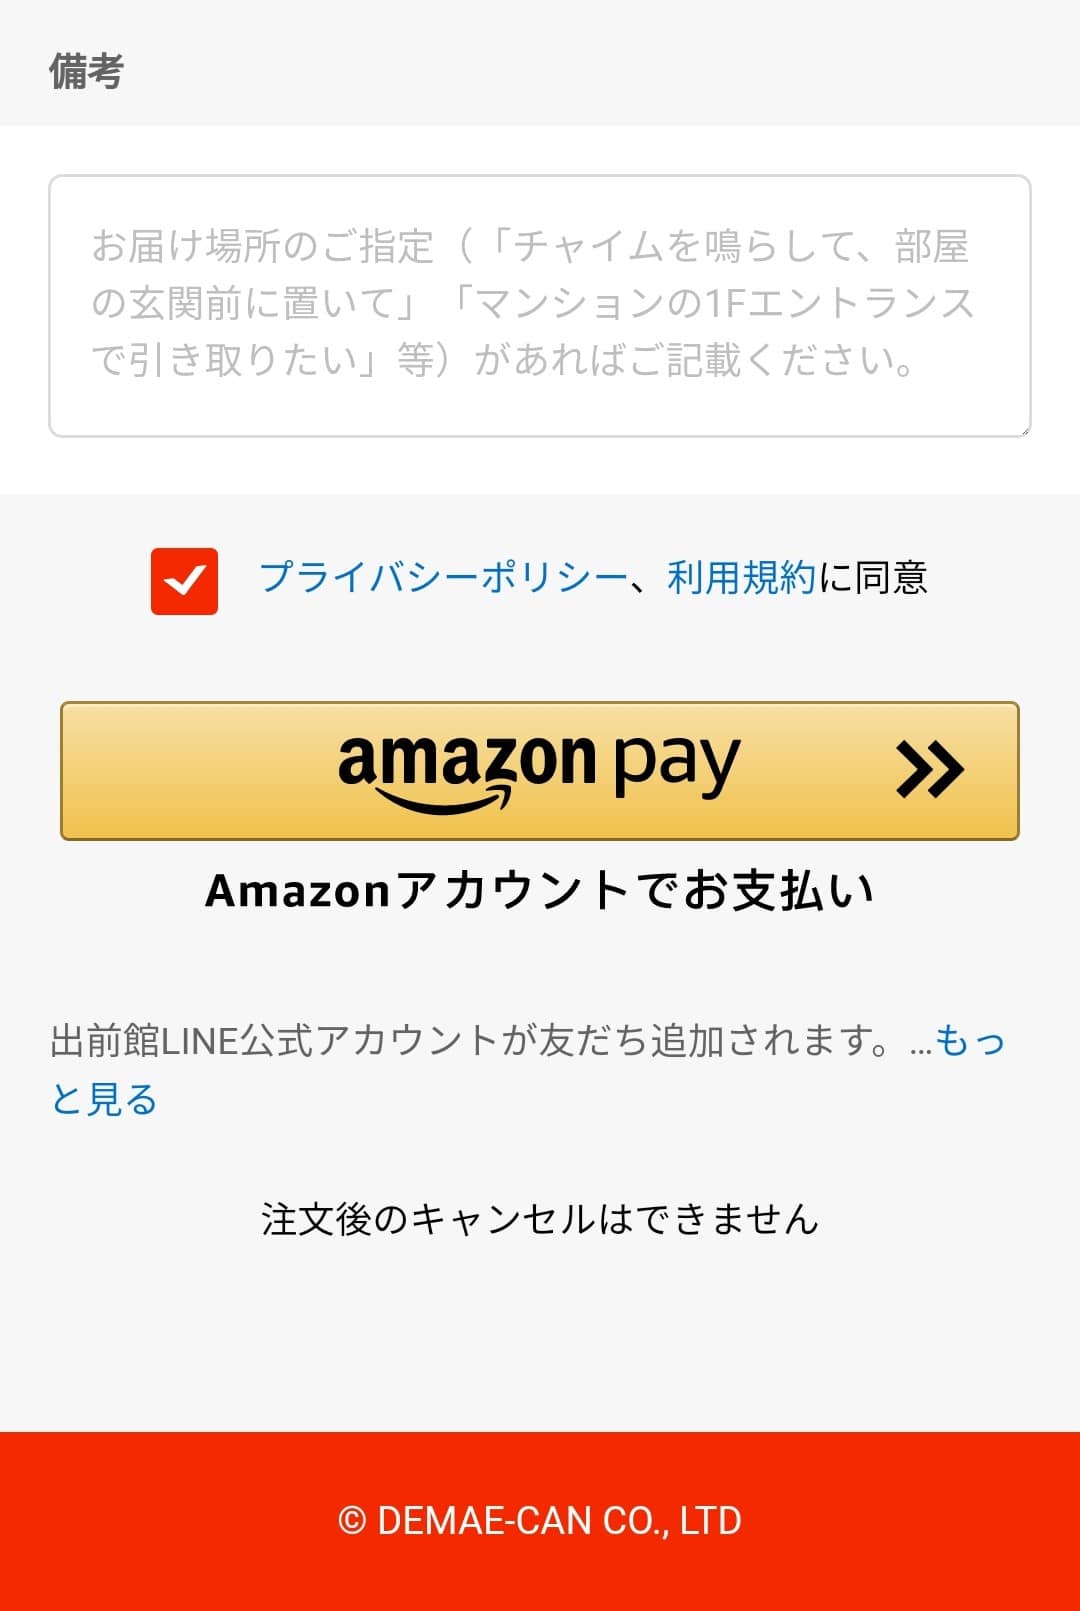 amazon payの使い方の画像。